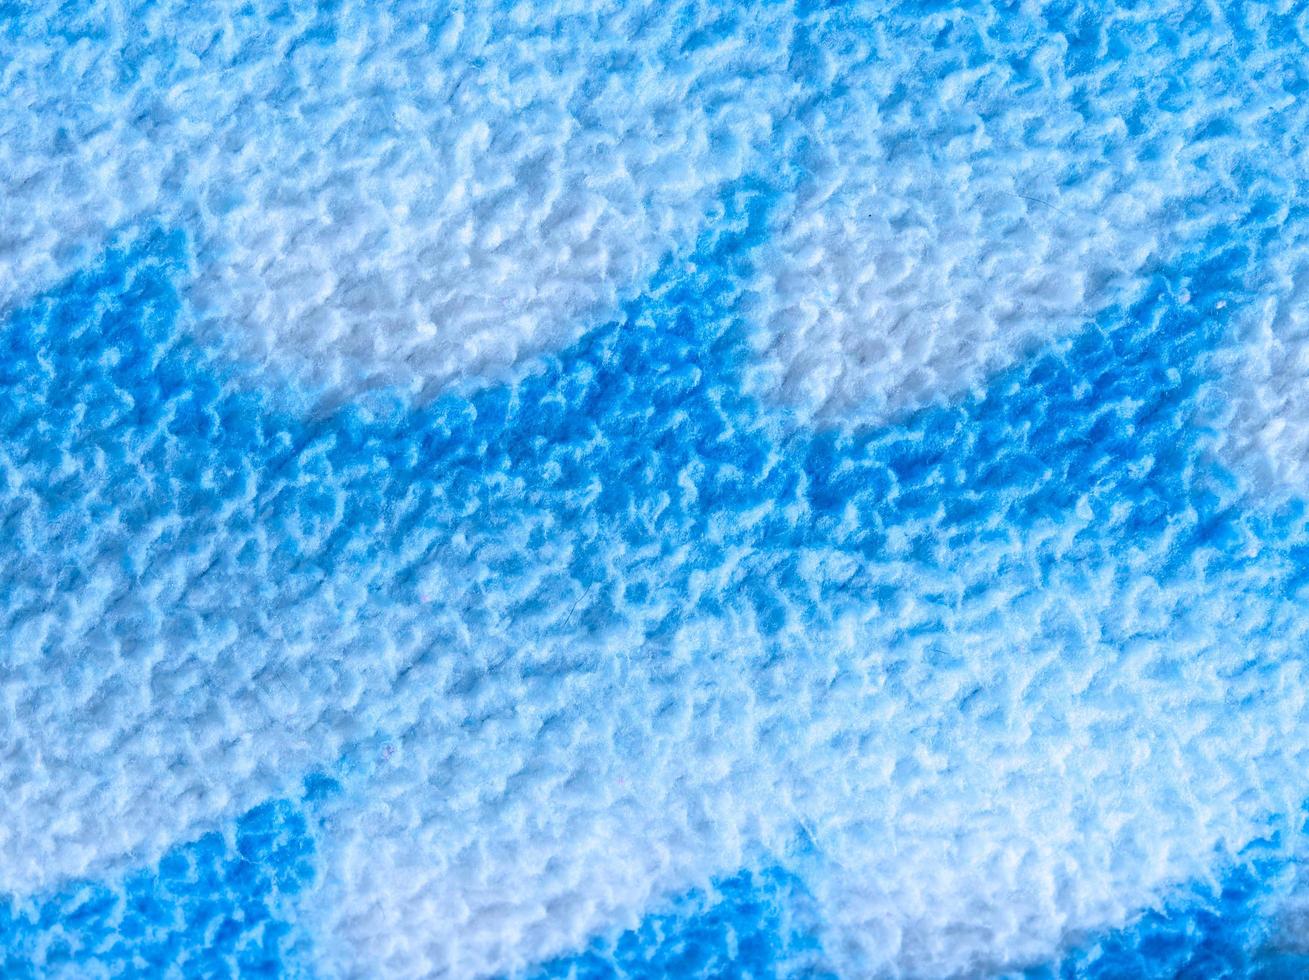 detalhe azul do tecido foto